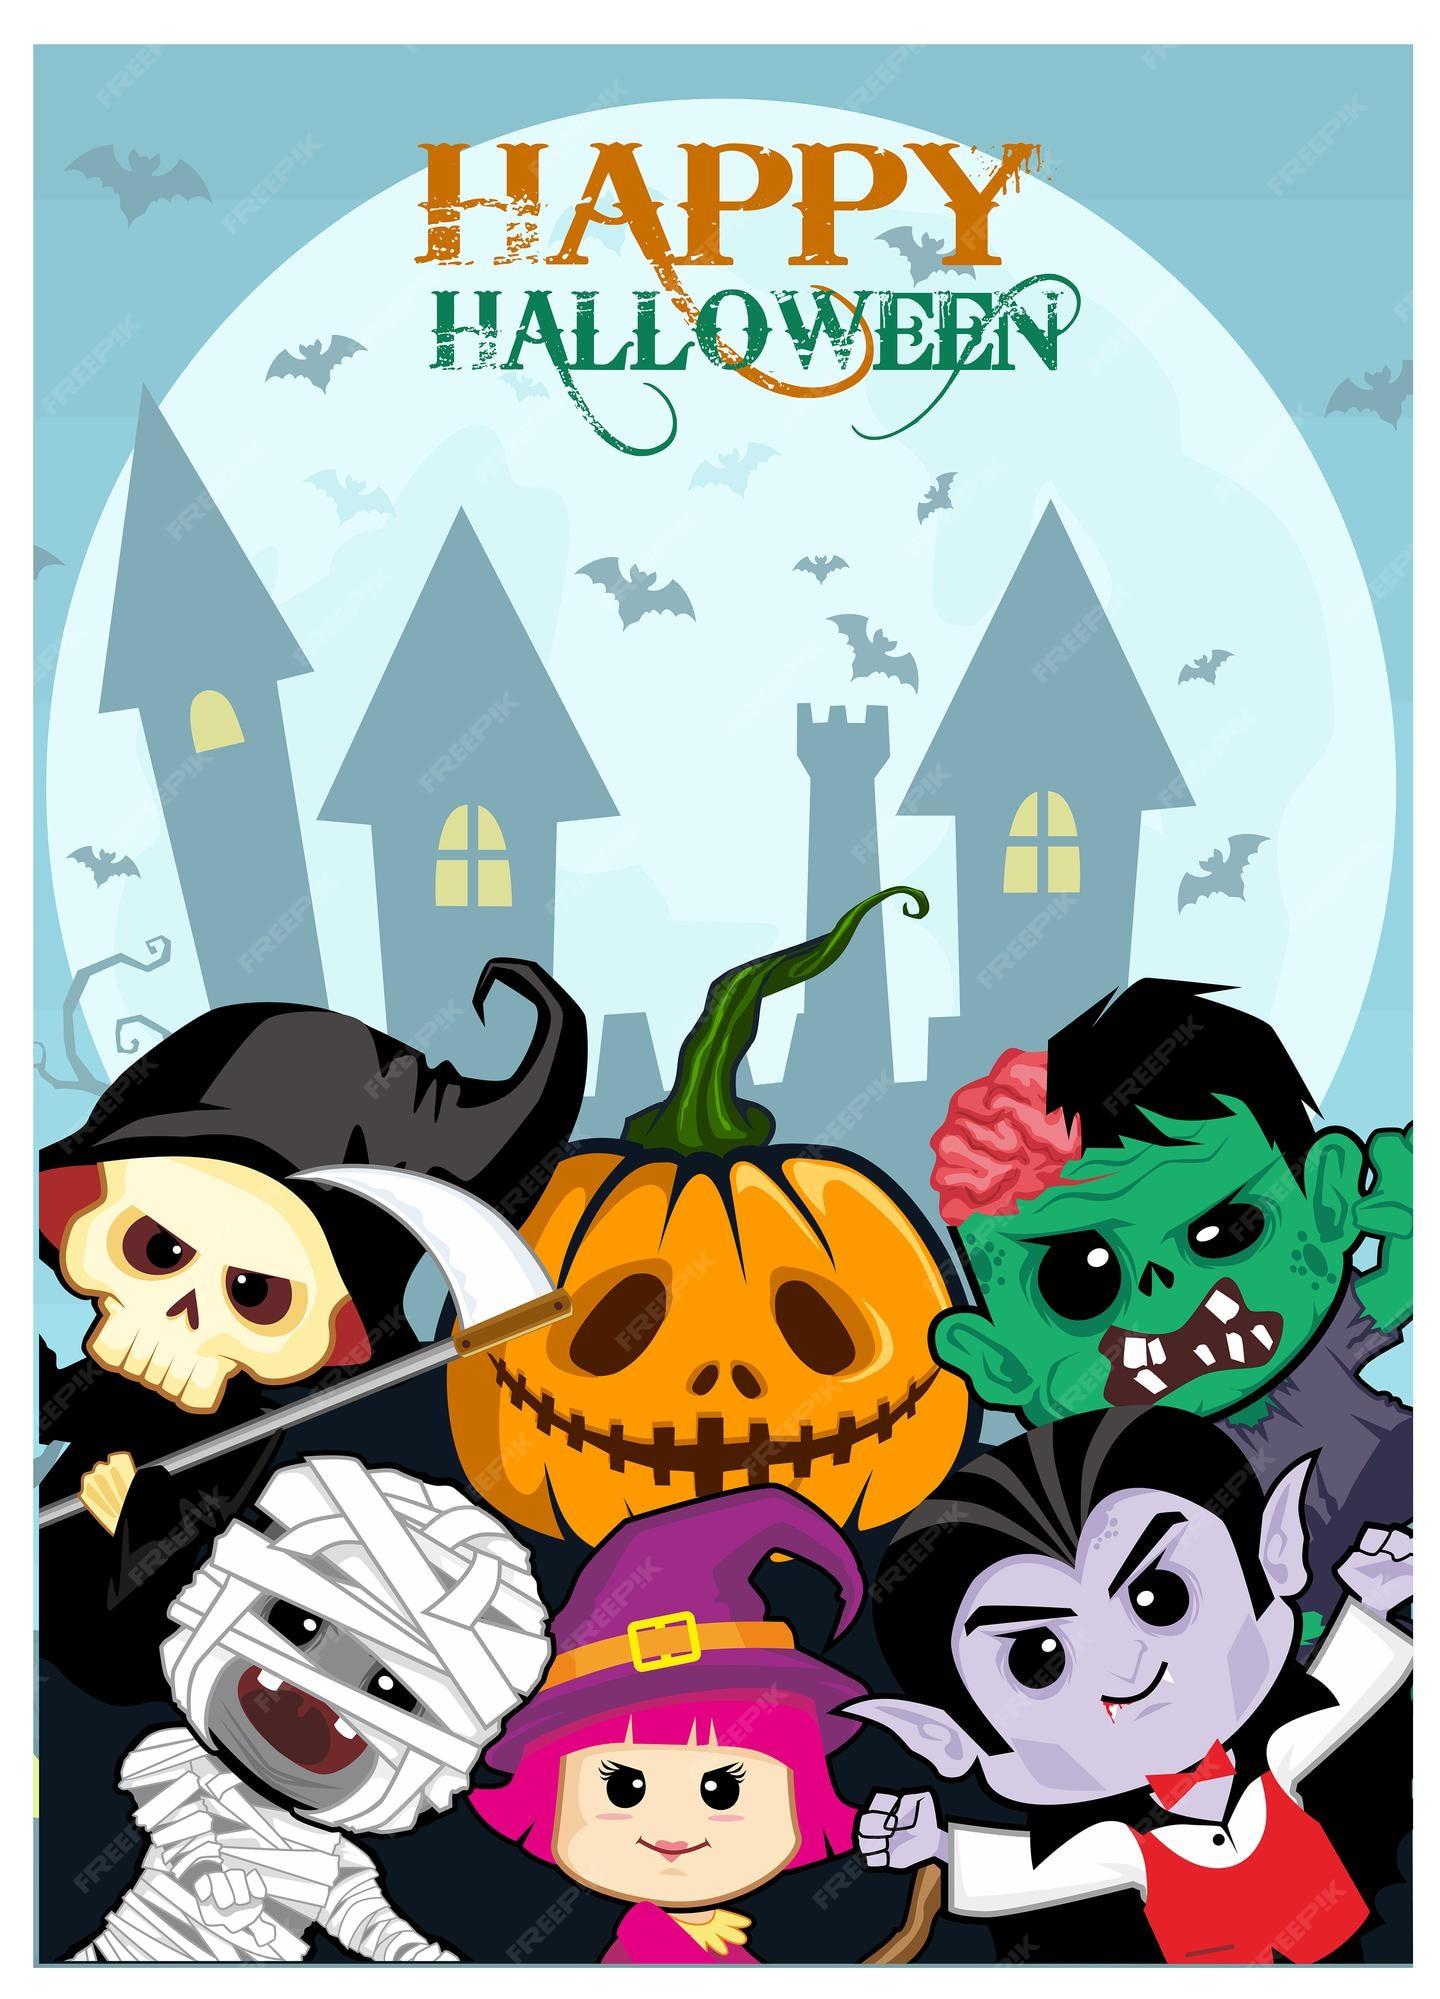 Premium Vector Halloween wallpaper cartoon